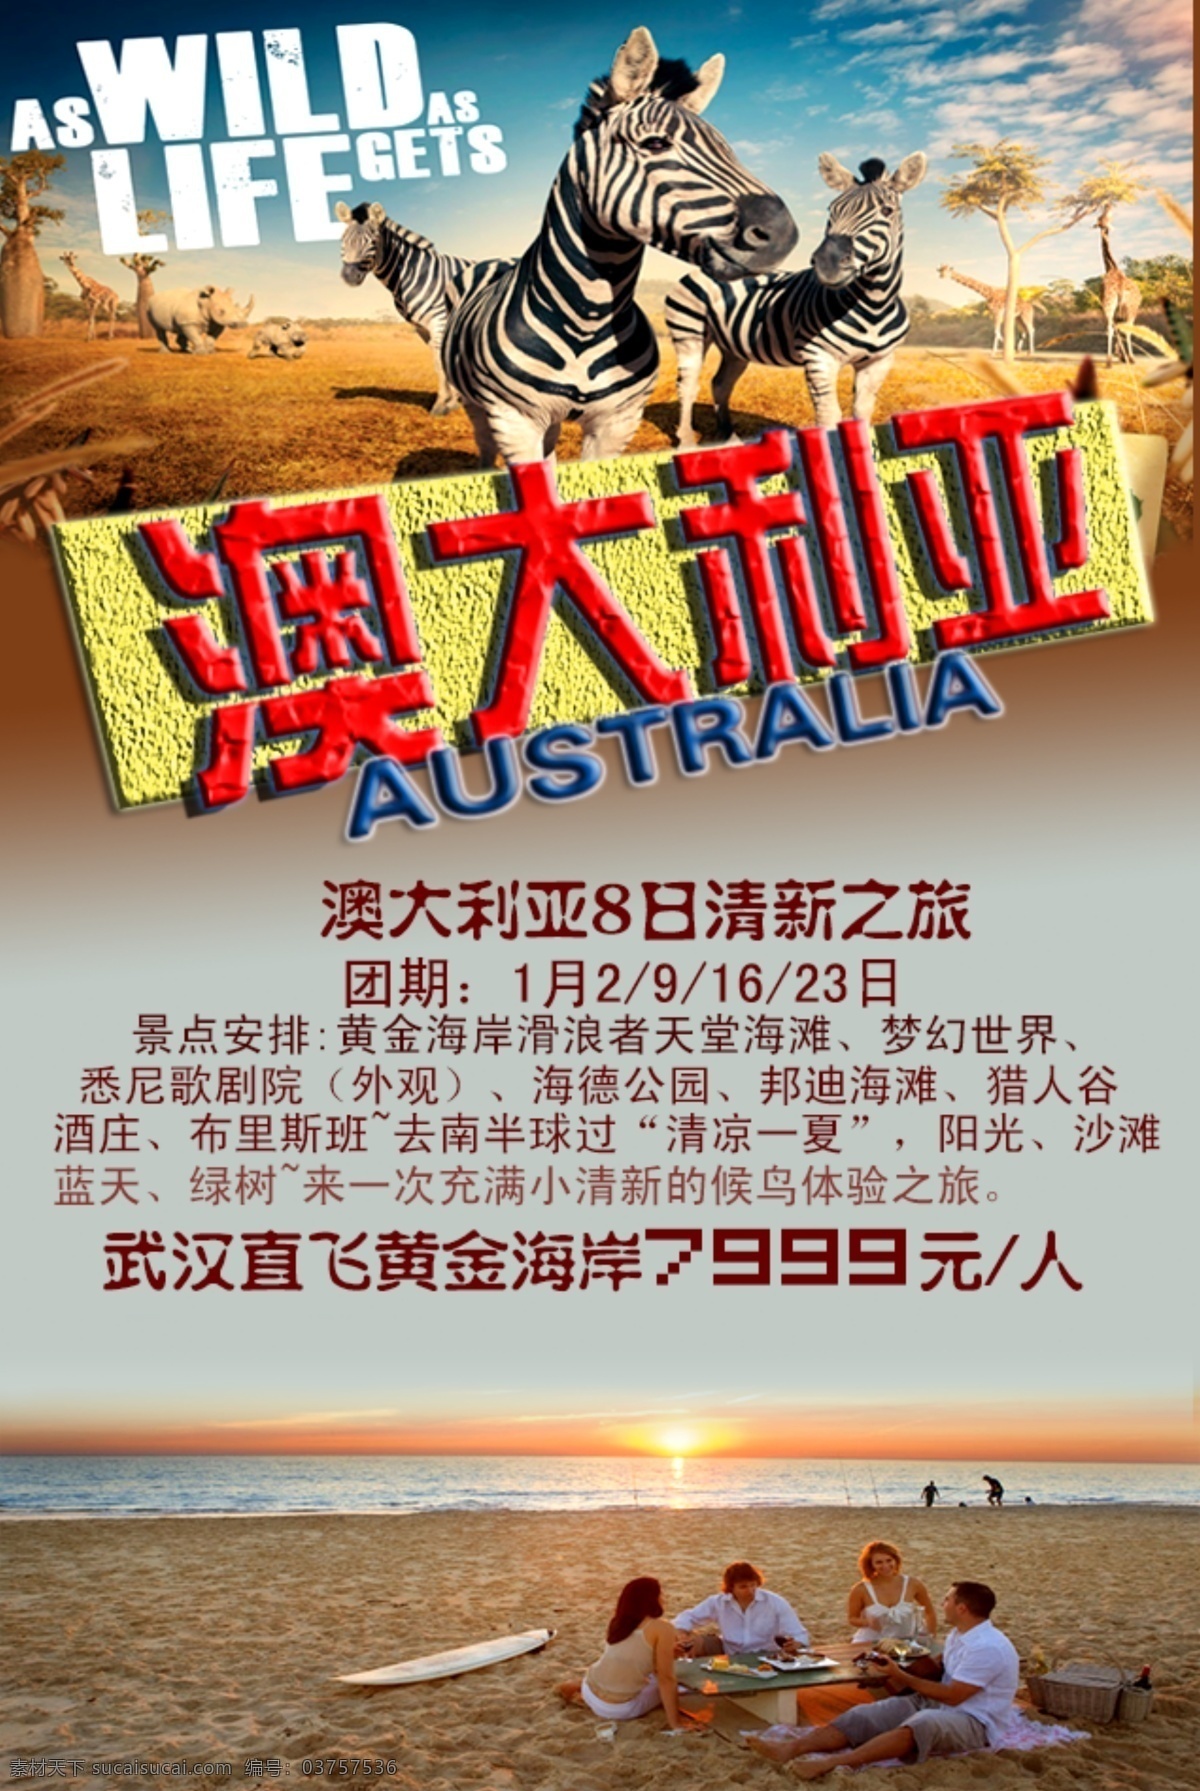 澳大利亚 旅游 海报 动物 灰色